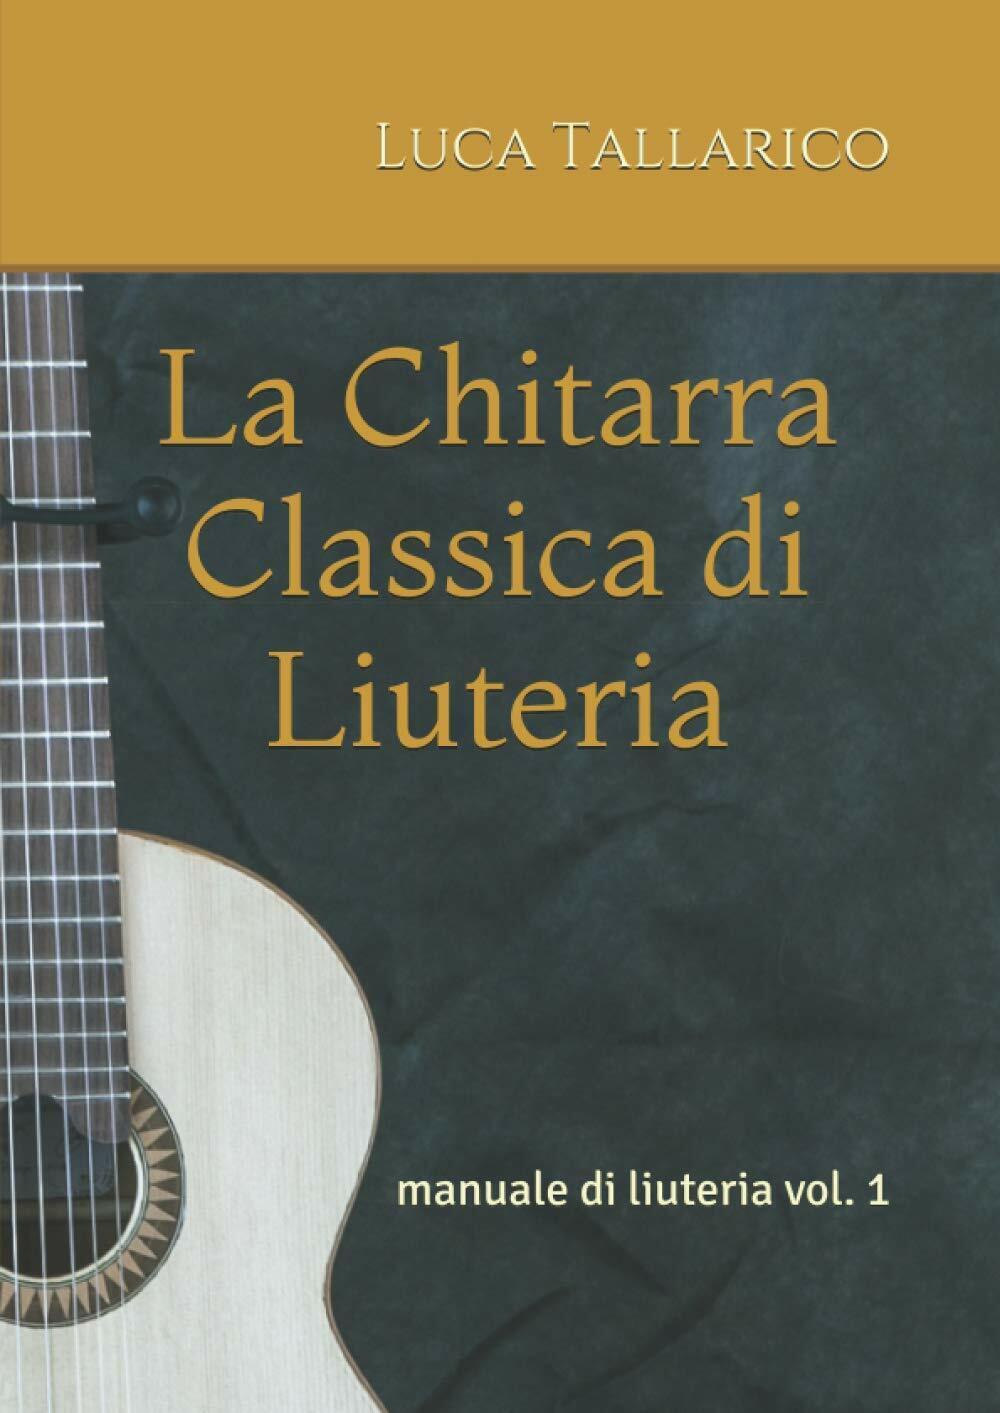 La Chitarra Classica Di Liuteria Manuale Di Liuteria Vol. 1 di Luca Tallarico,  